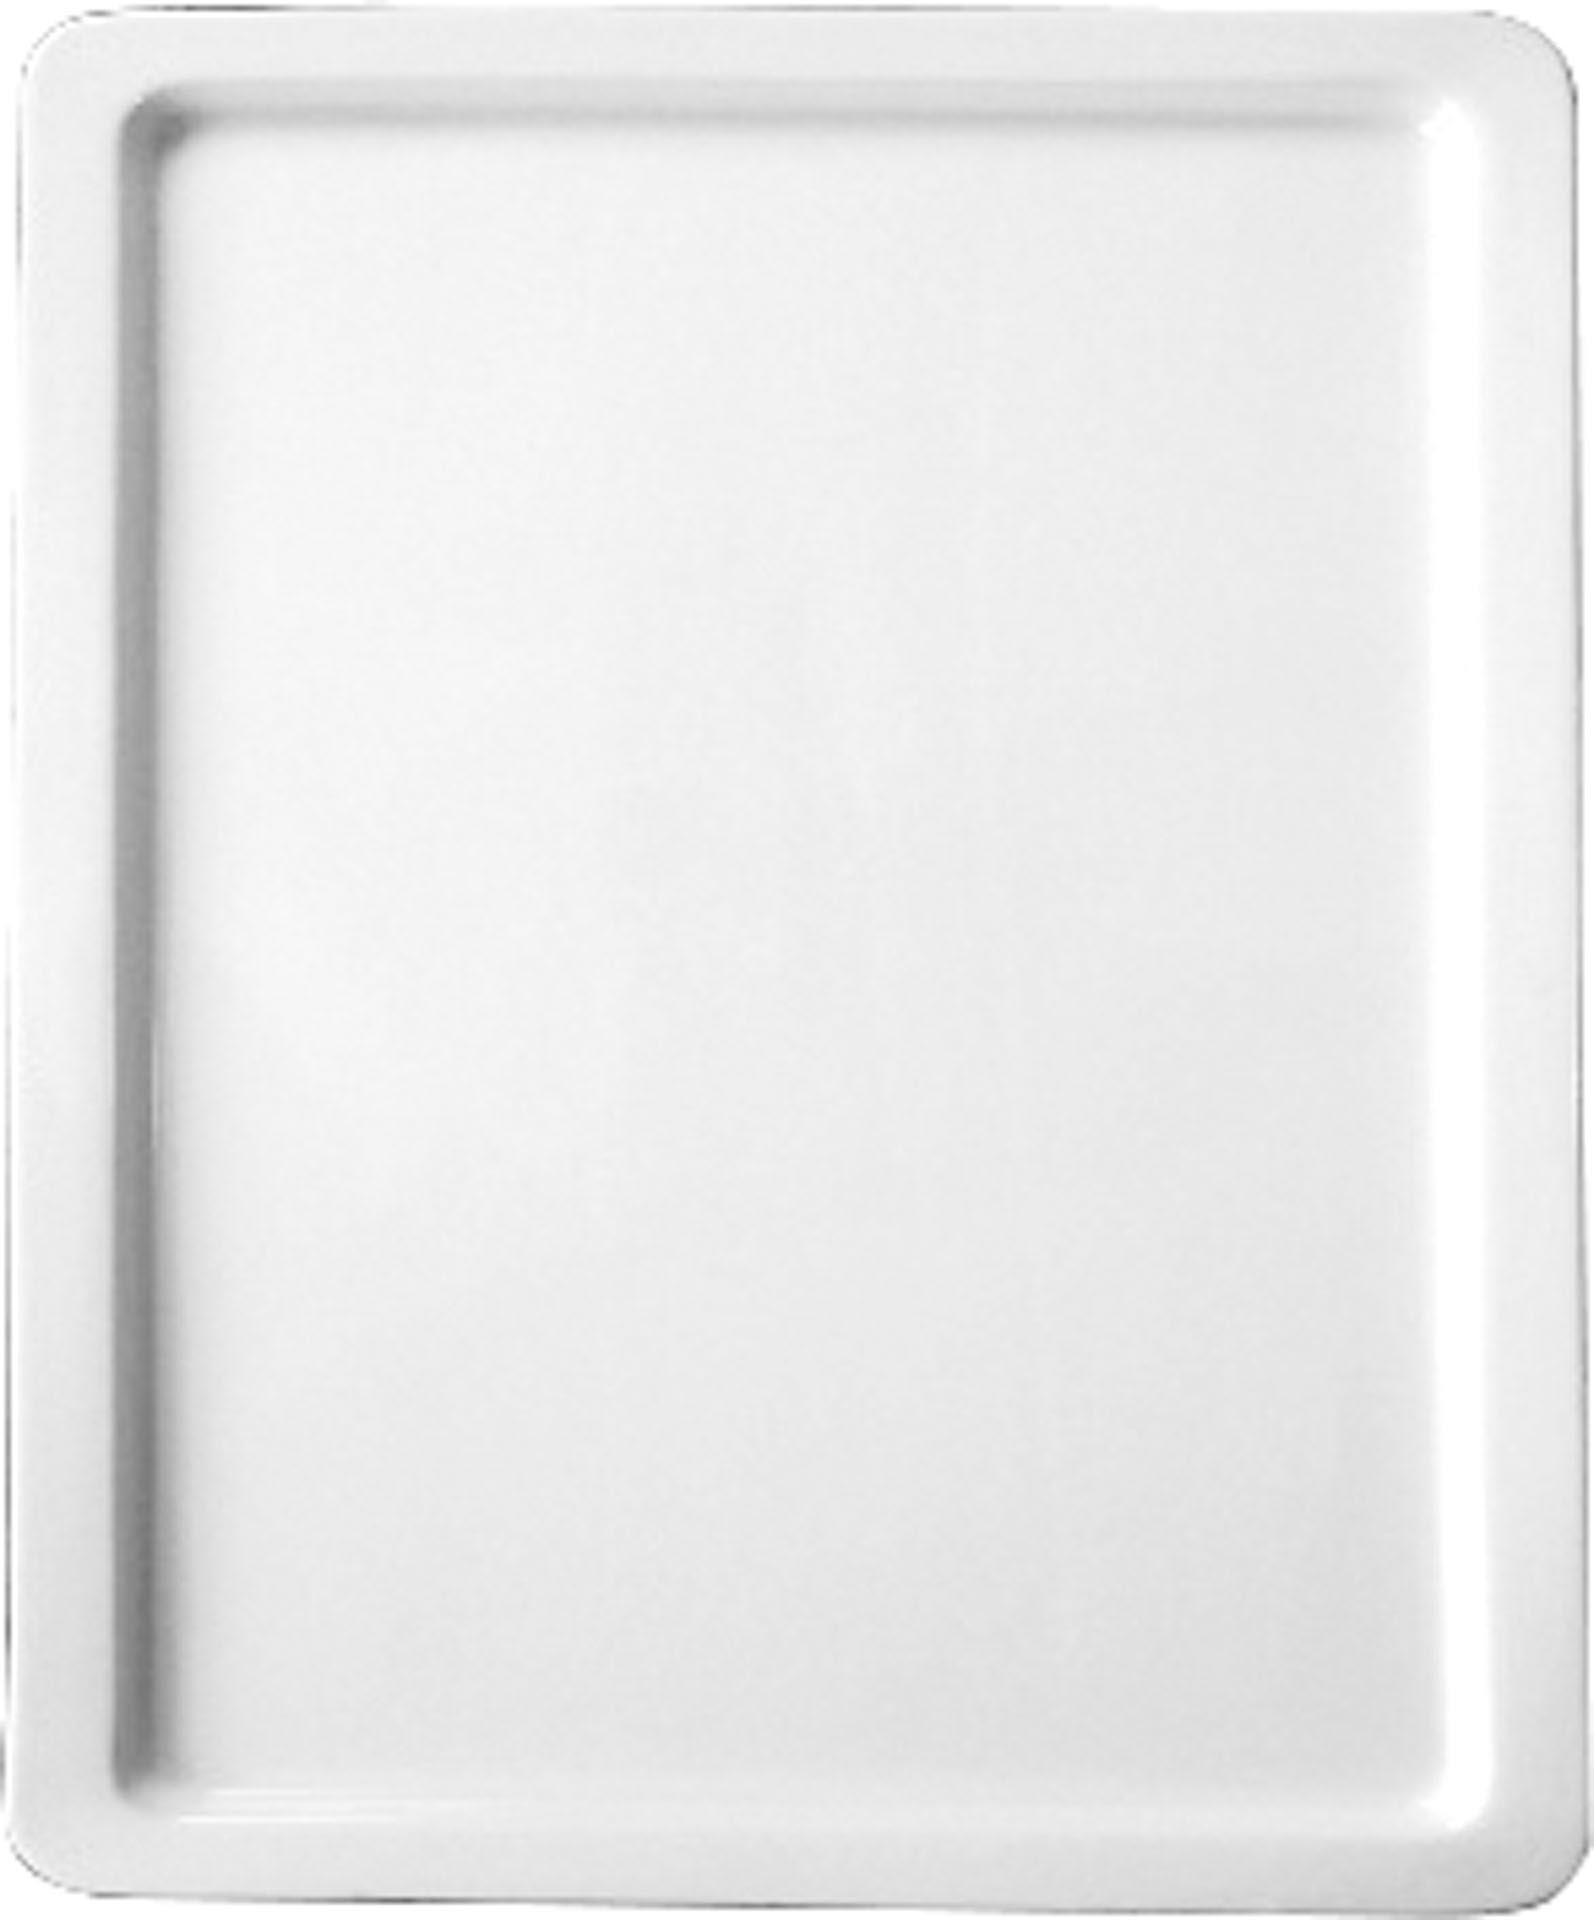 GN-Platte 1/3 - 20 mm, weiß, Porzellan